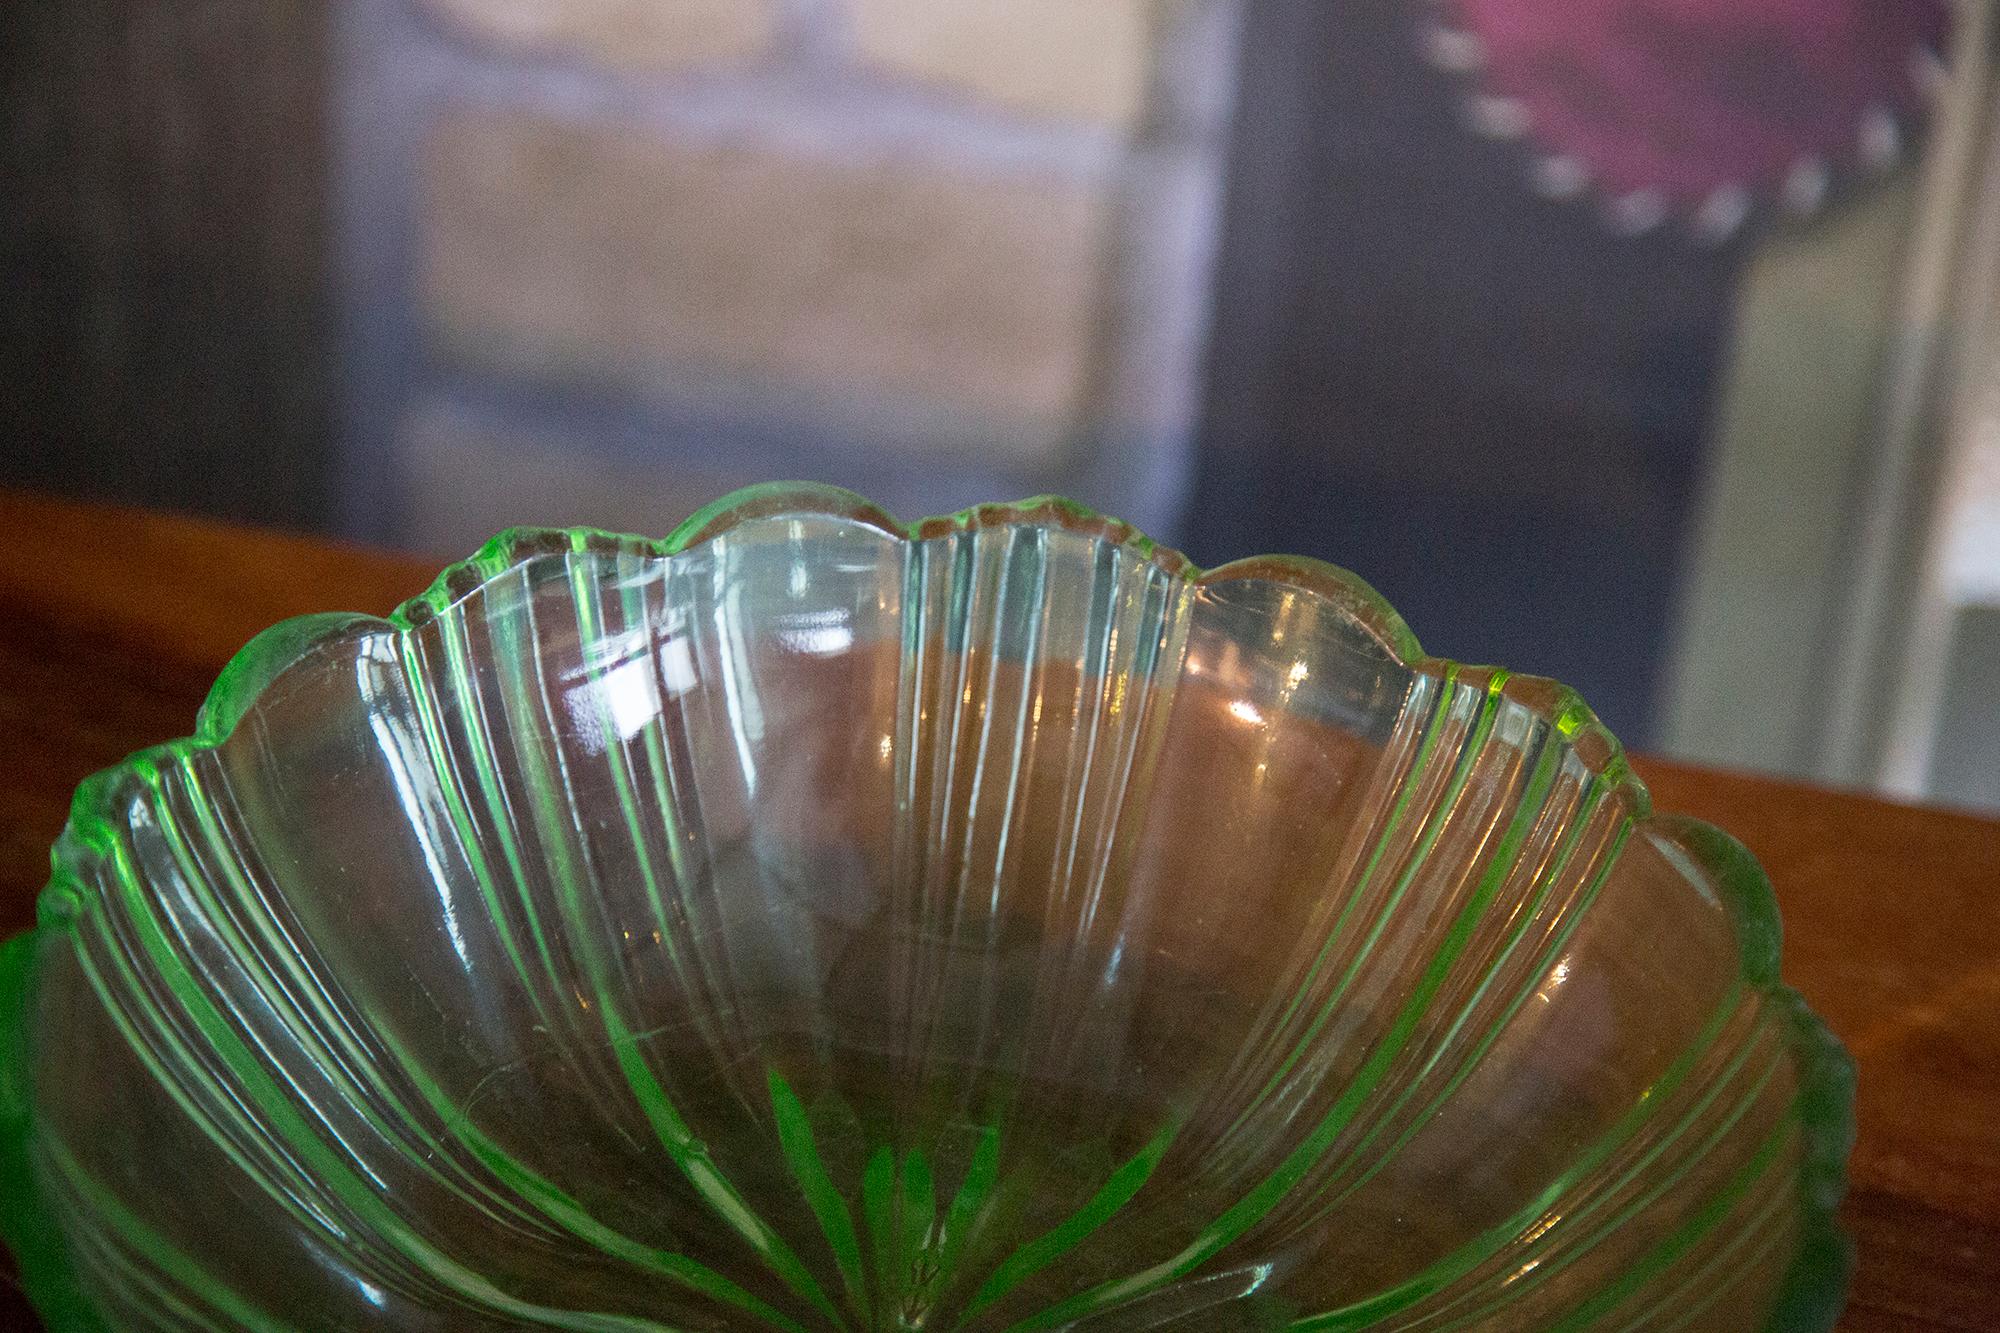 Schöner dekorativer grüner Glasteller/Schüssel aus Italien. 
Teller ist in sehr gutem Vintage-Zustand, keine Schäden oder Risse. 
Original Glas. Einzigartiges Stück für jeden Tisch und jede Einrichtung! 
Nur ein Stück verfügbar.